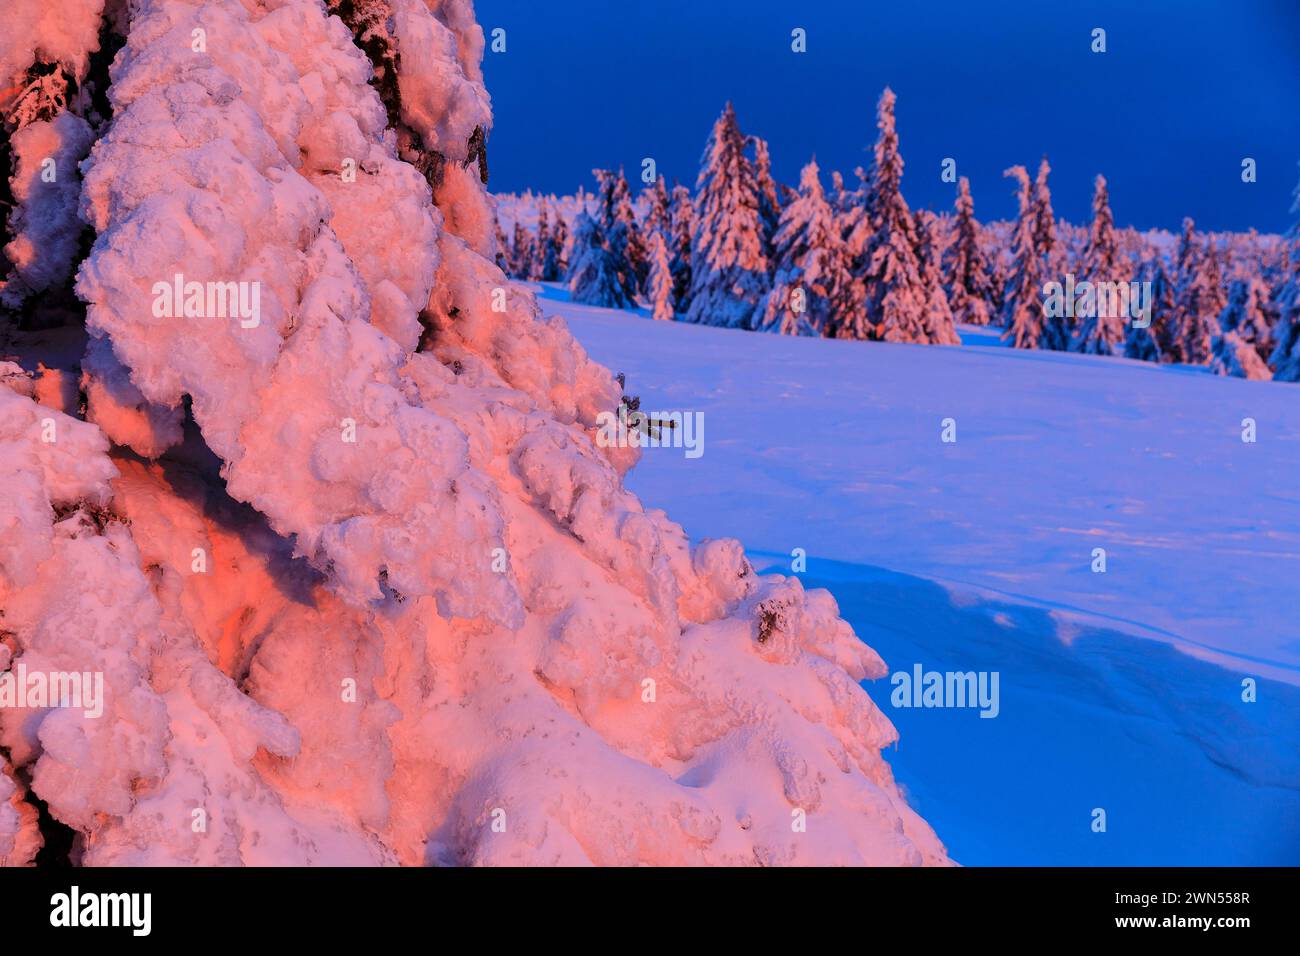 Winterzauber an der Wossecker Baude zur Dämmerung, verschneite Bäume im Abendlicht, Harrachsdorf im Riesengebirge, Tschechien *** Winter magic at the Stock Photo